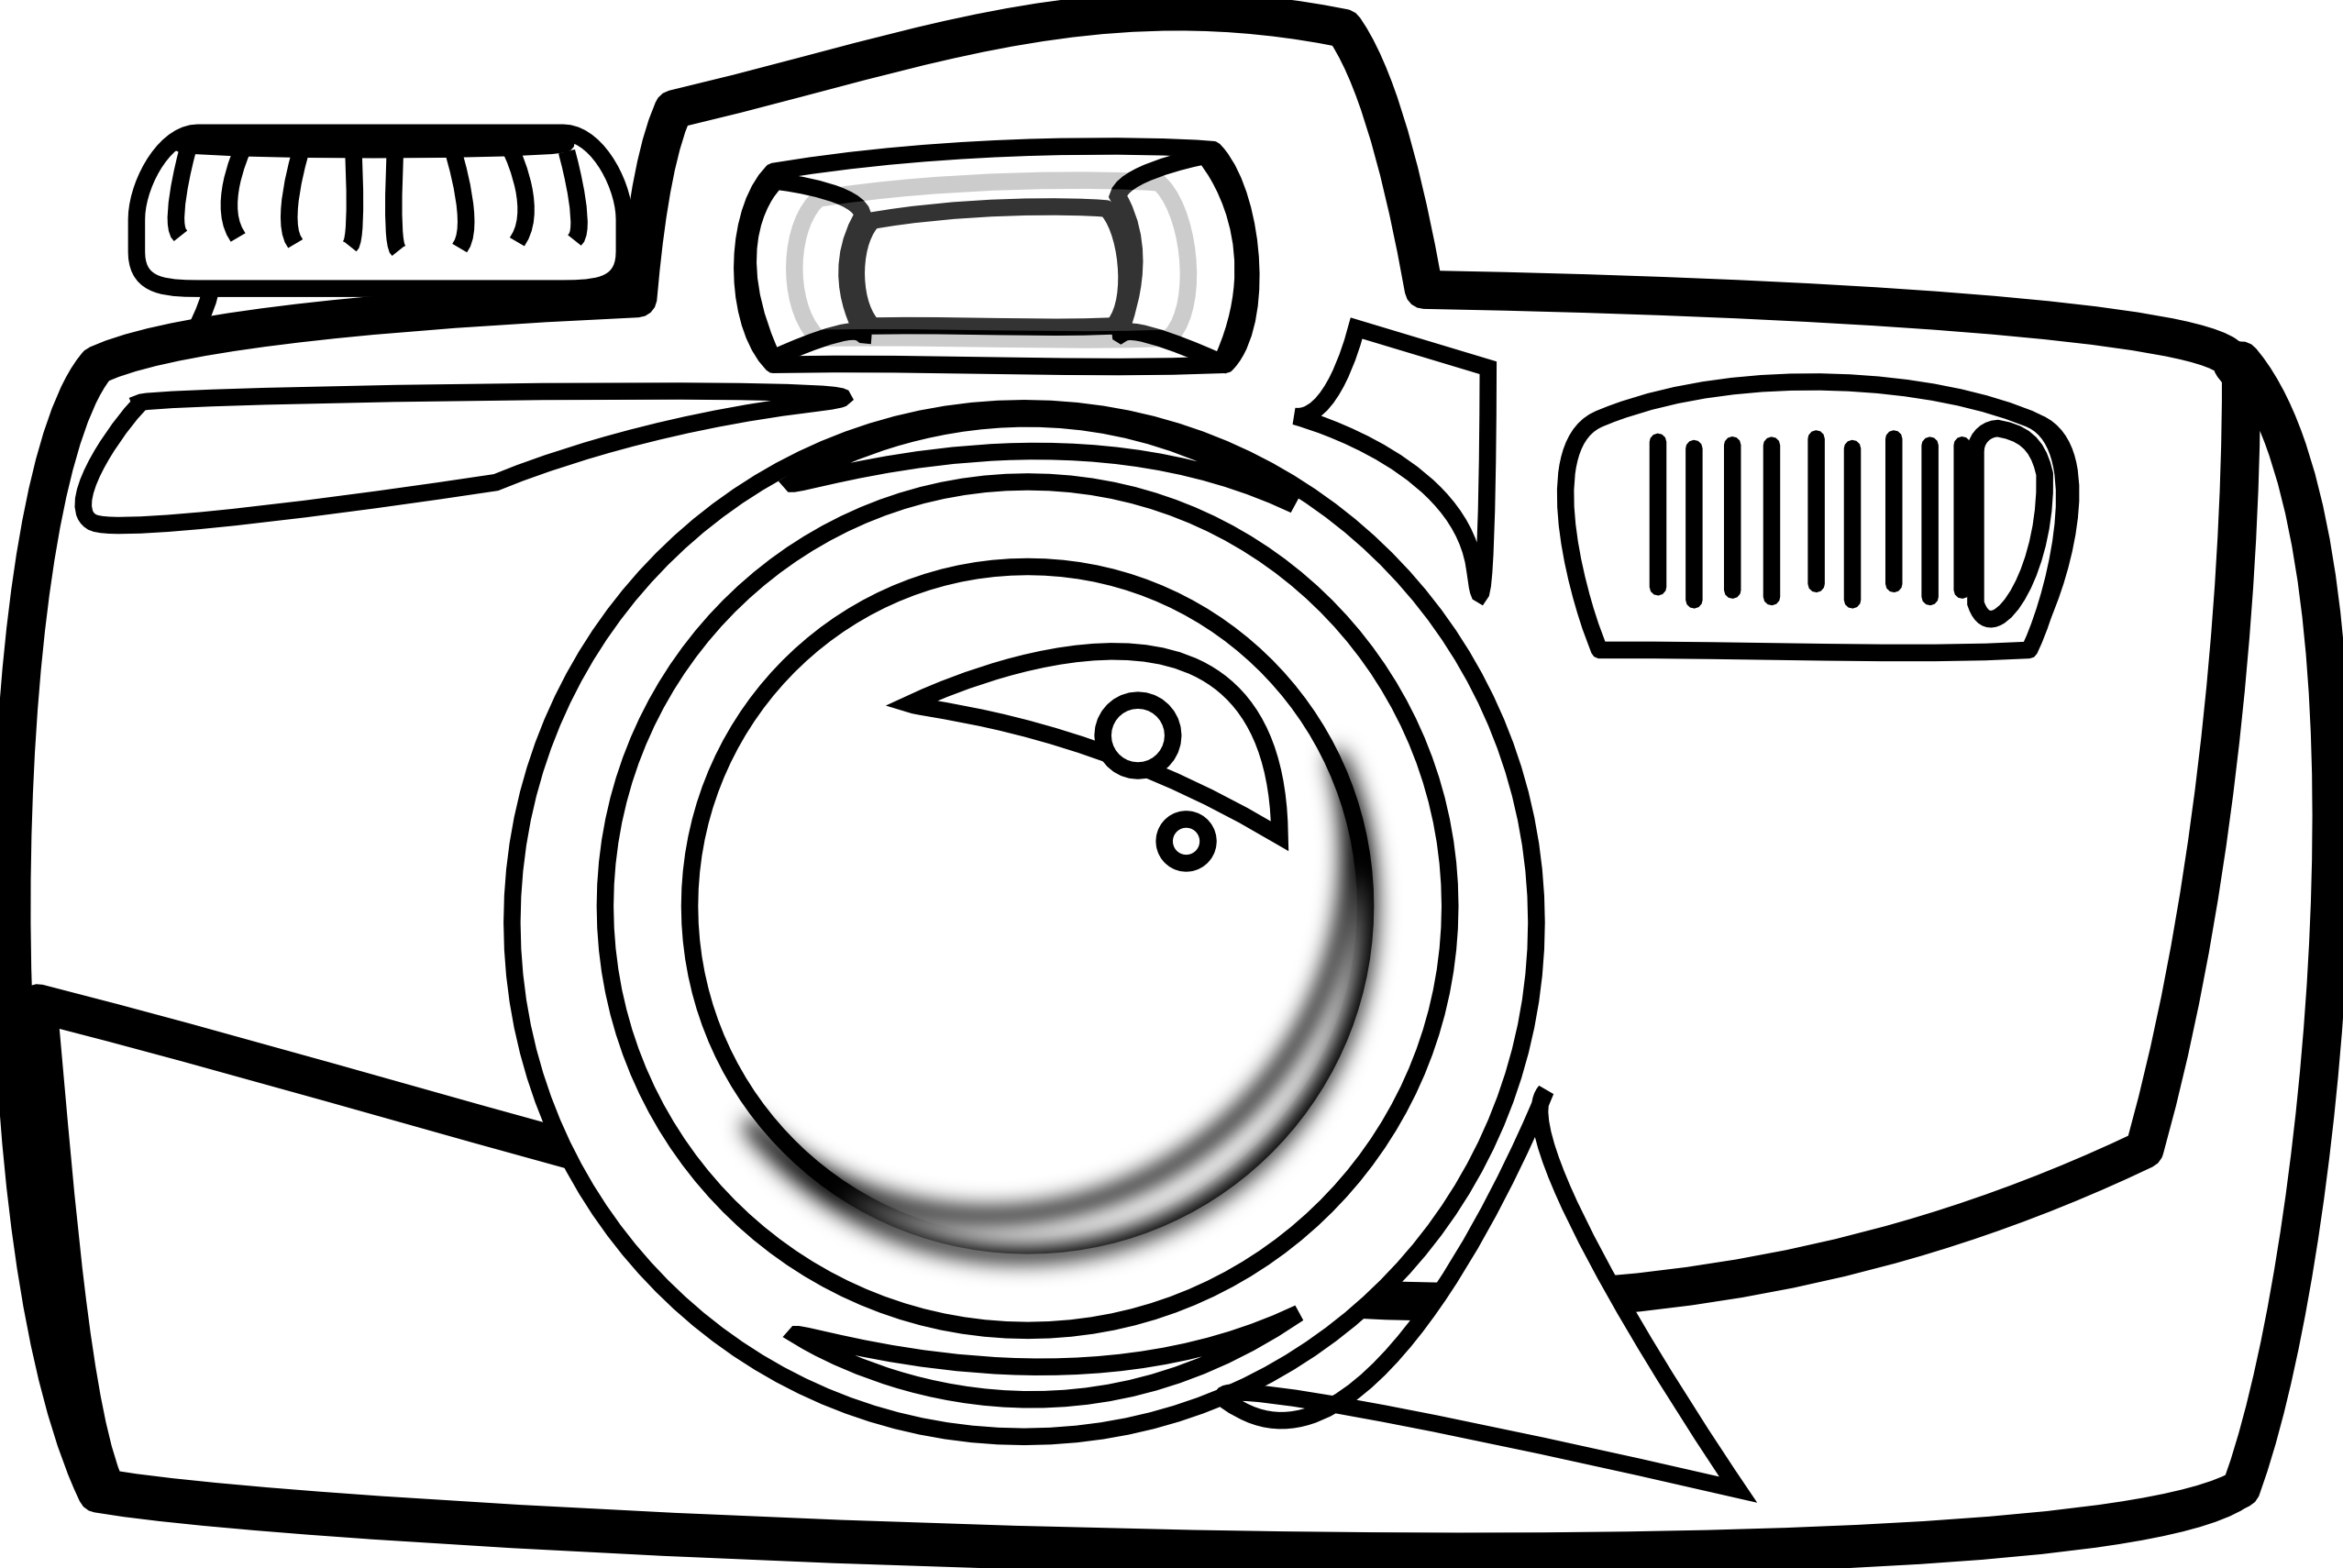 camera cartoon clipart - photo #49